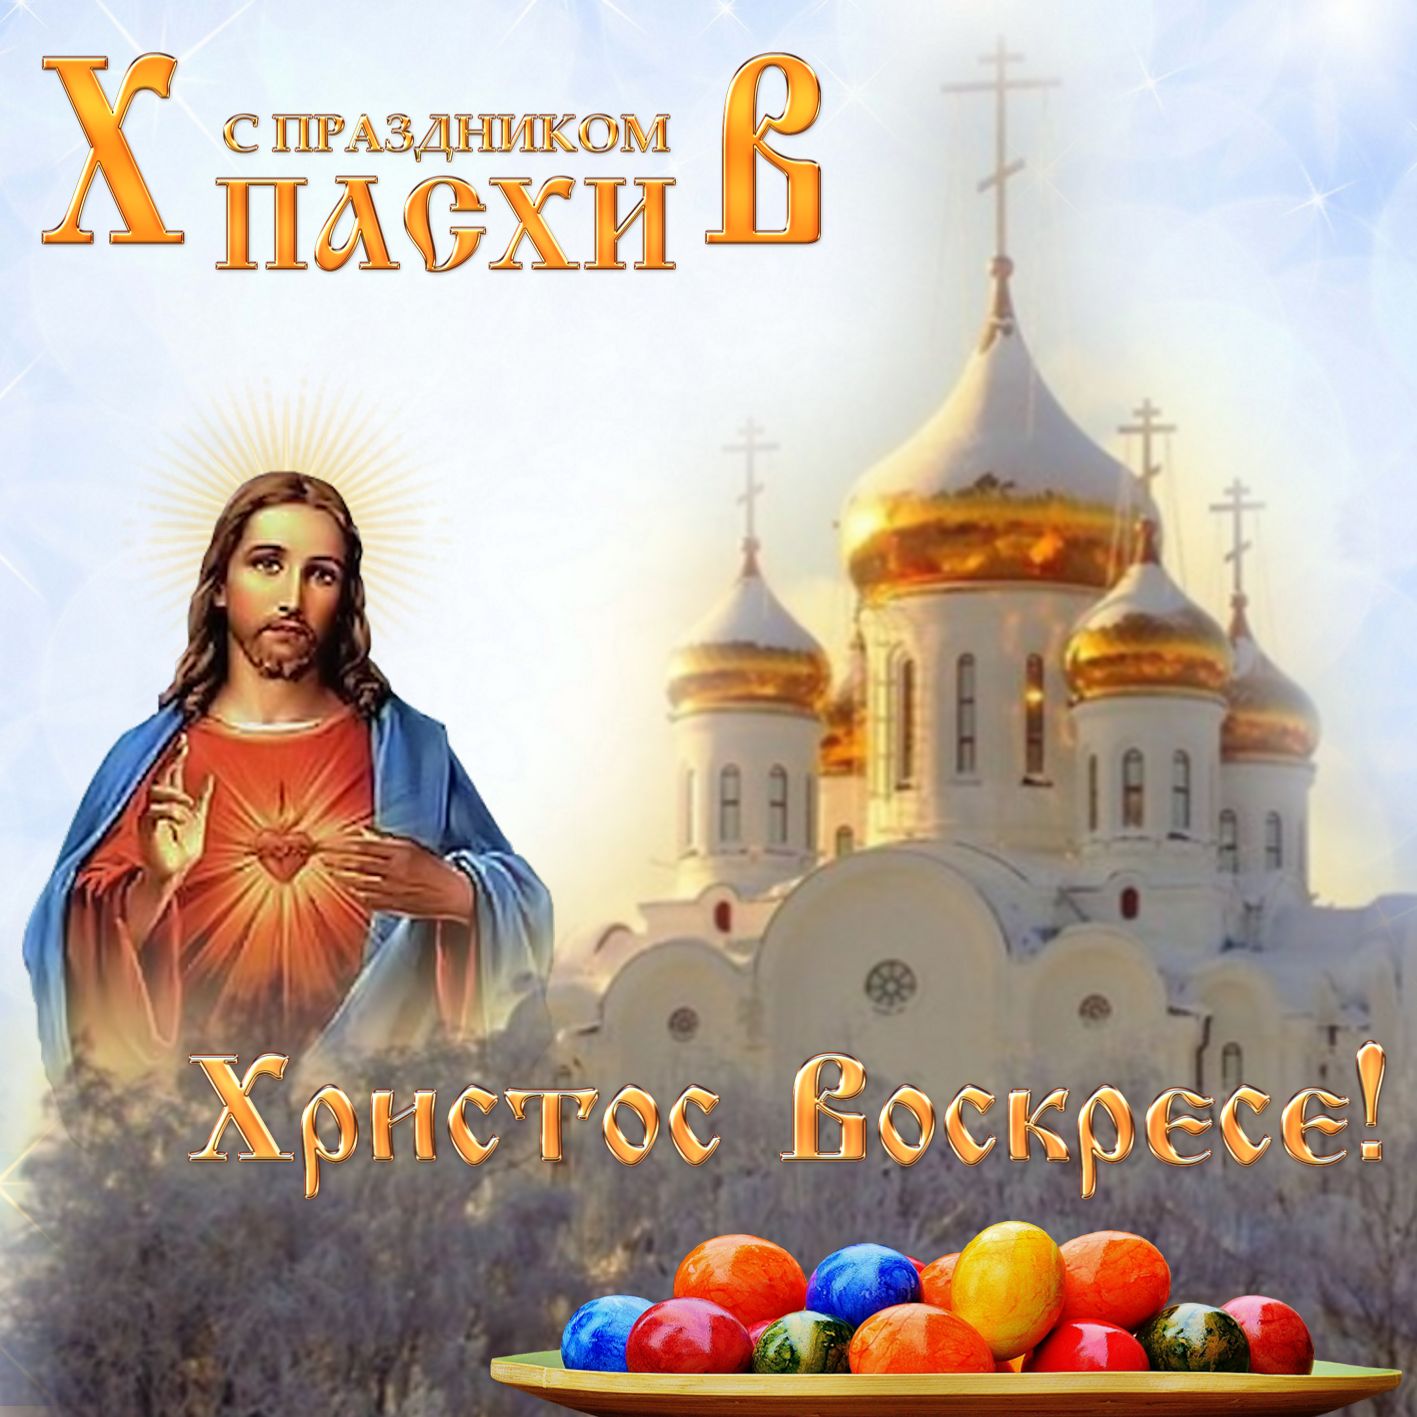 Православная пасхальная картинка